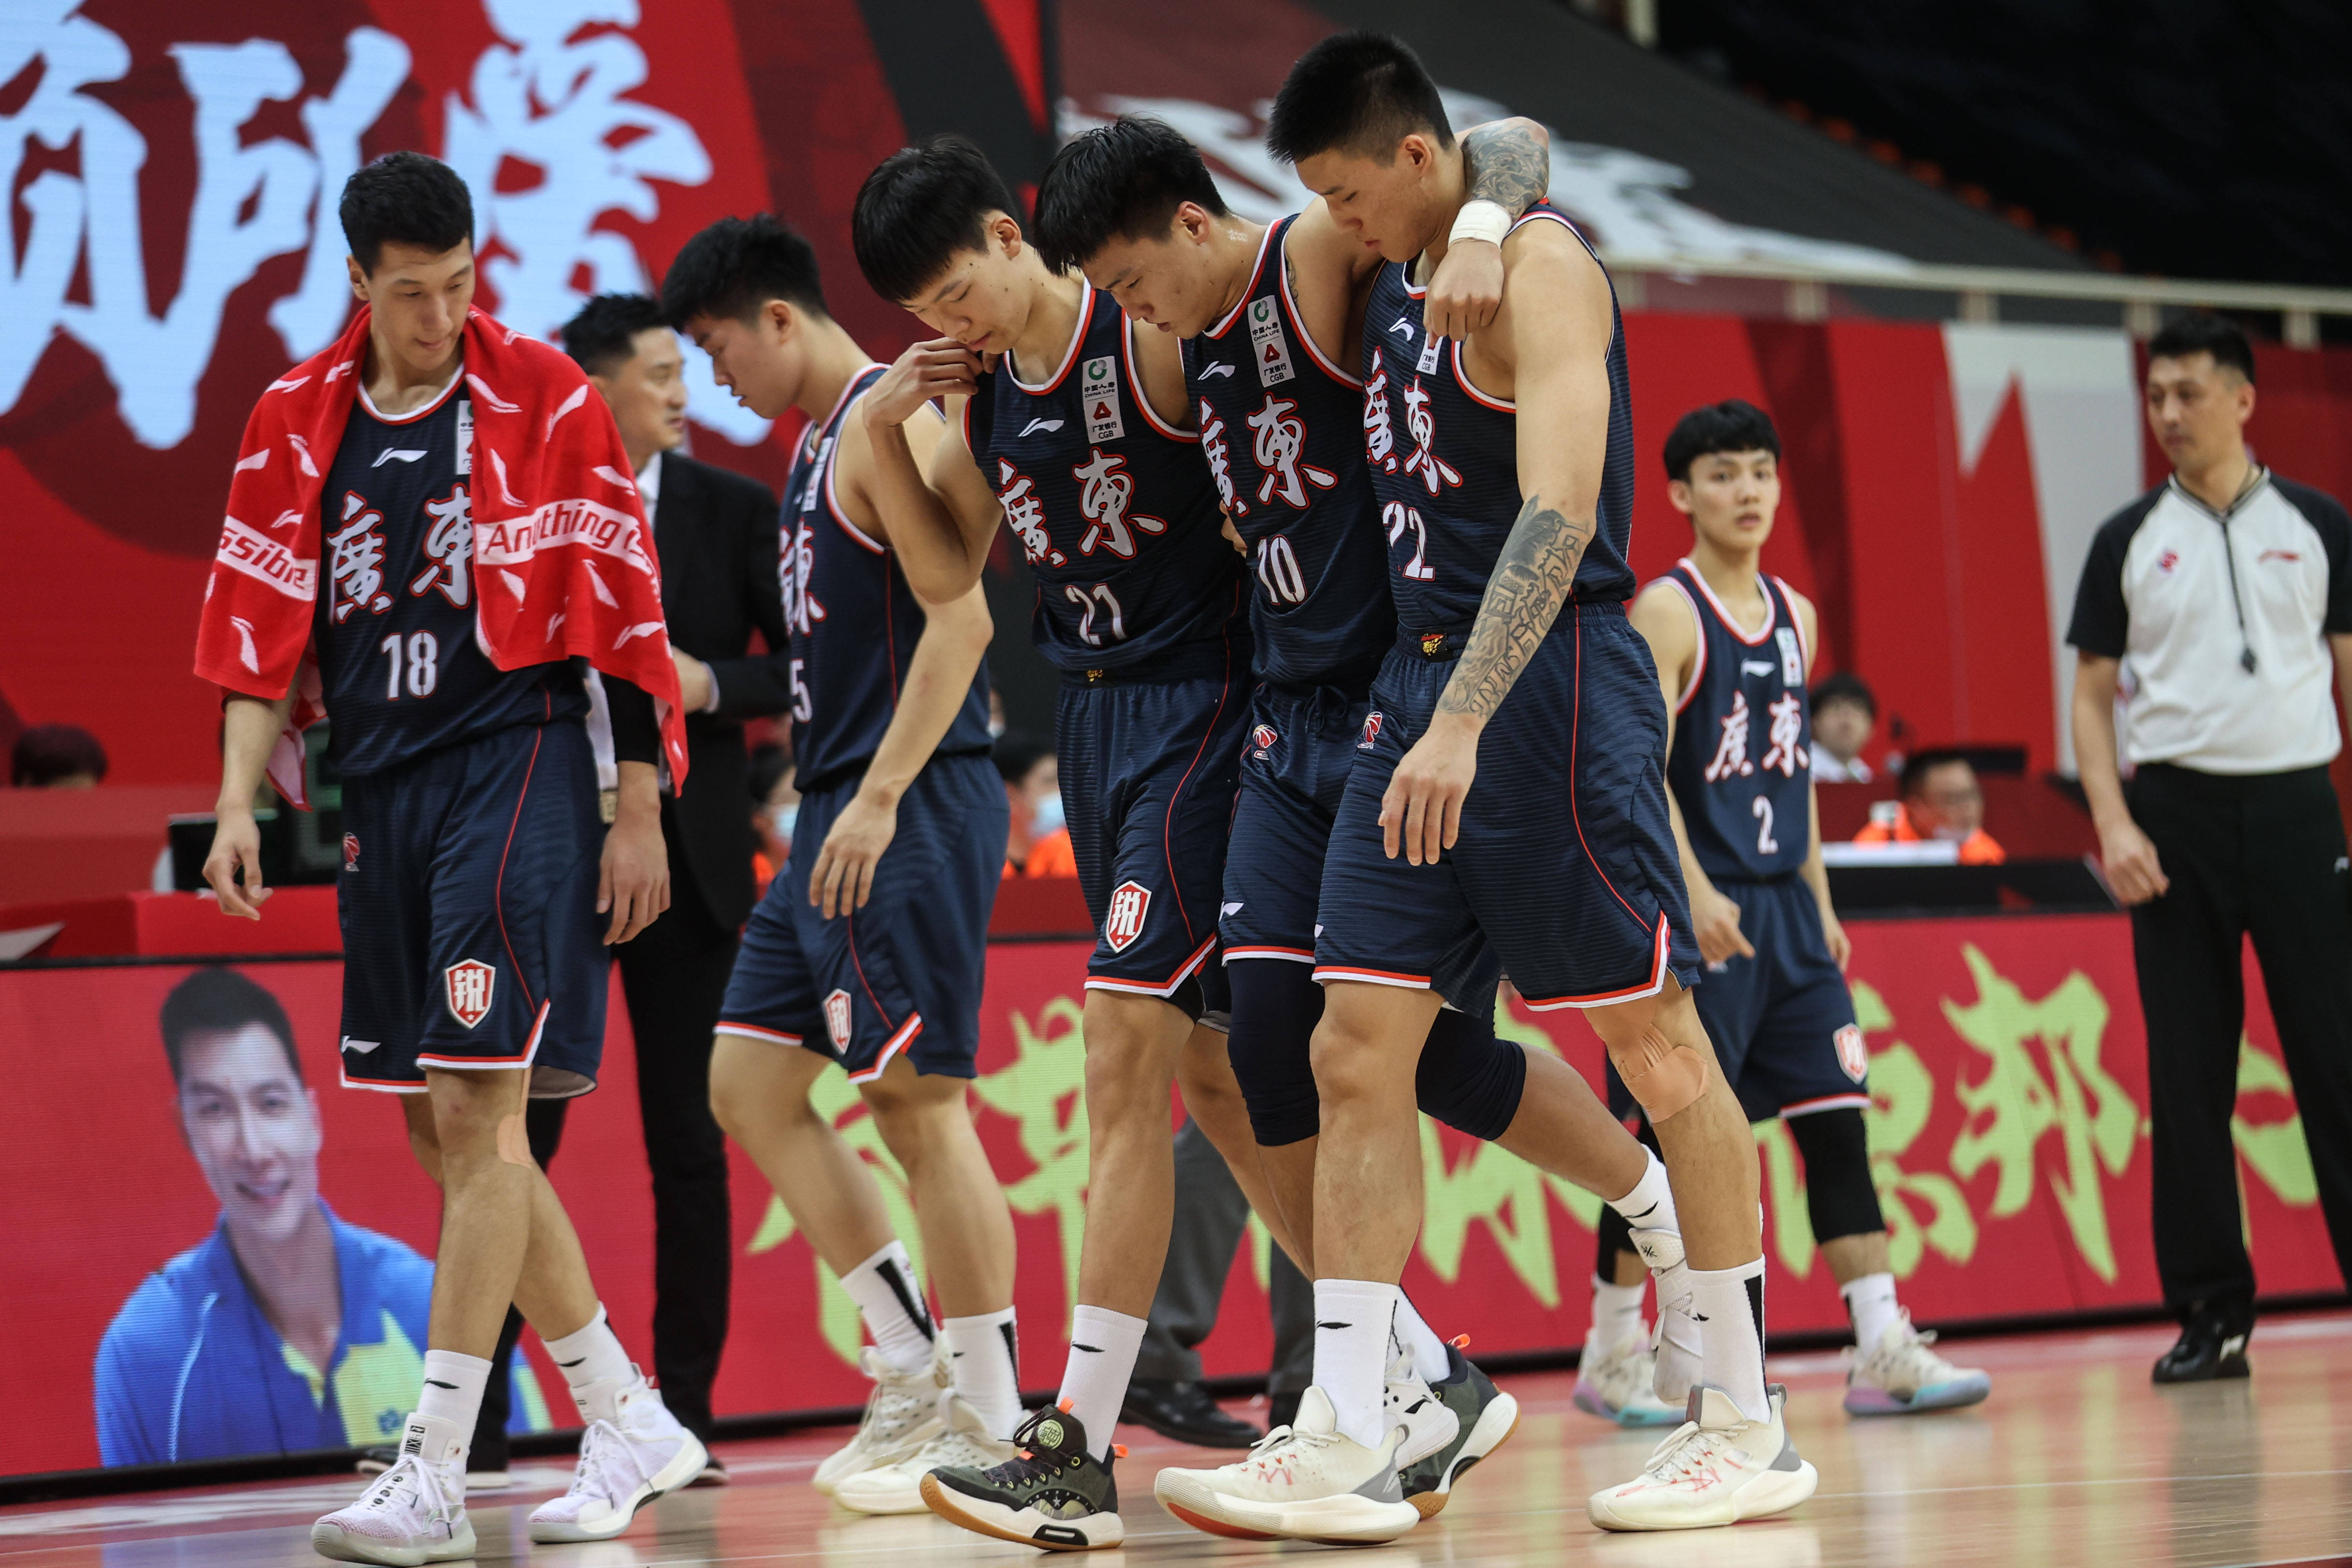 1月31日,苏州肯帝亚队球员吴冠希(右)与广东东莞大益队球员